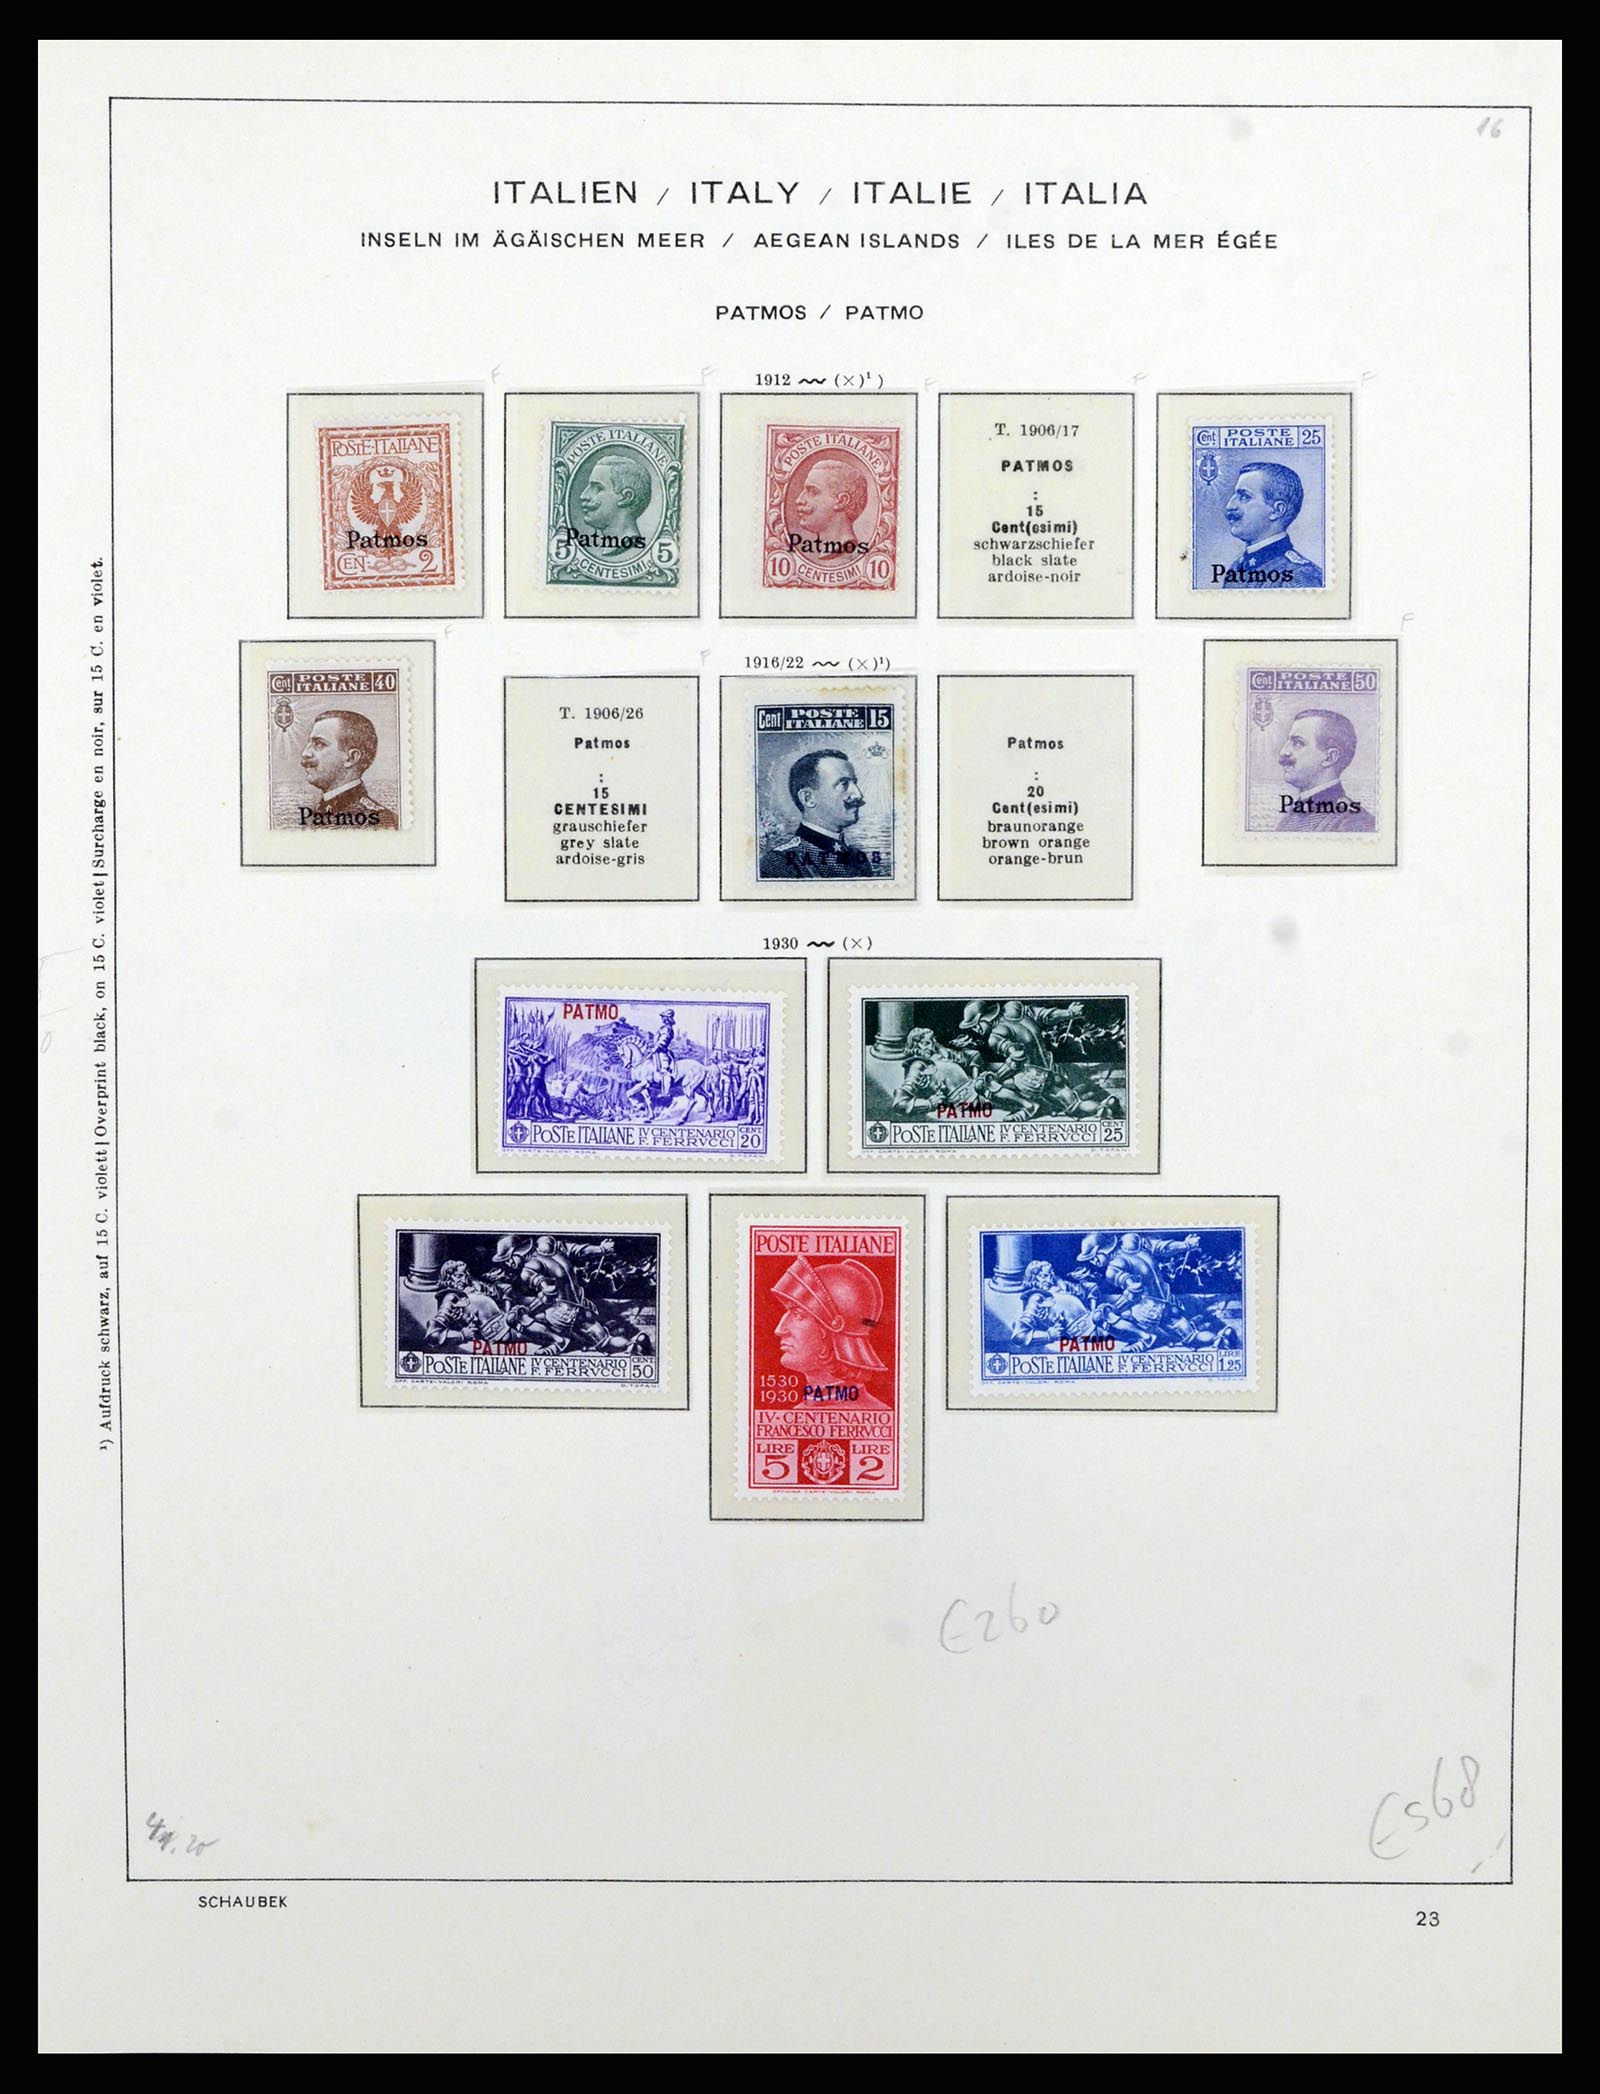 36577 049 - Stamp collection 36577 Italiaanse gebieden 1870-1940.